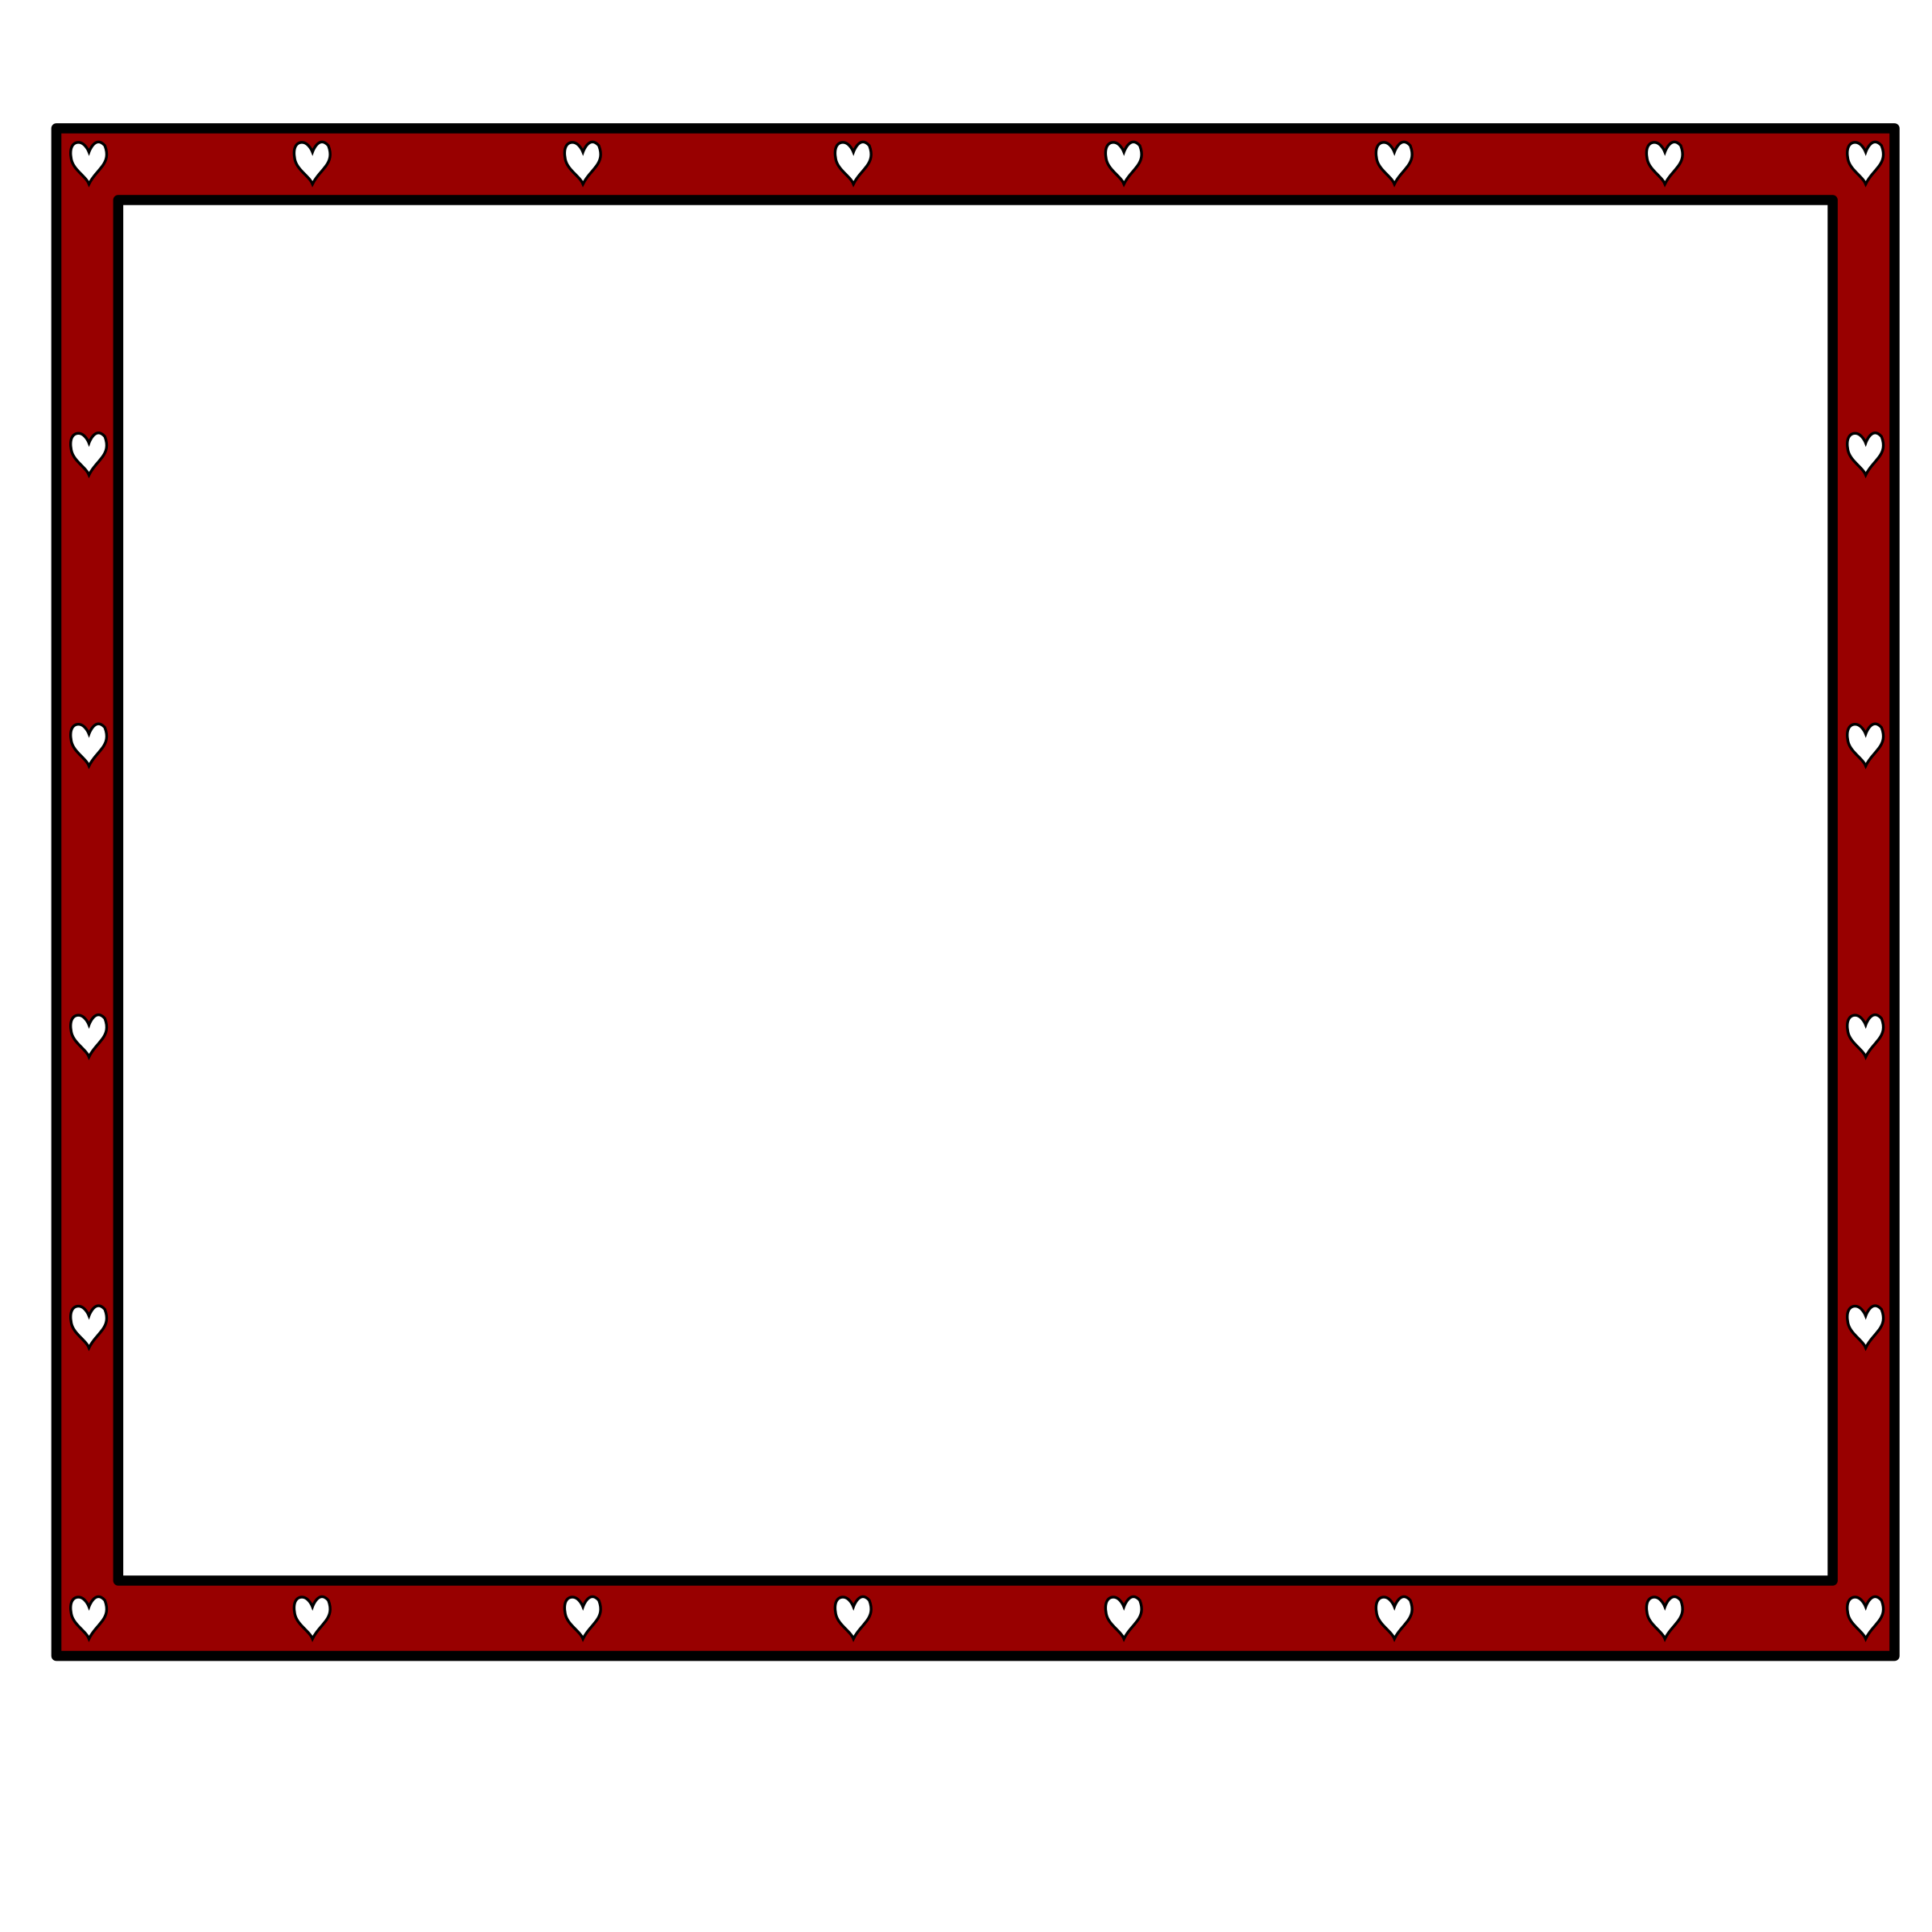 Clipart - border redBlack-hearts4x3.3